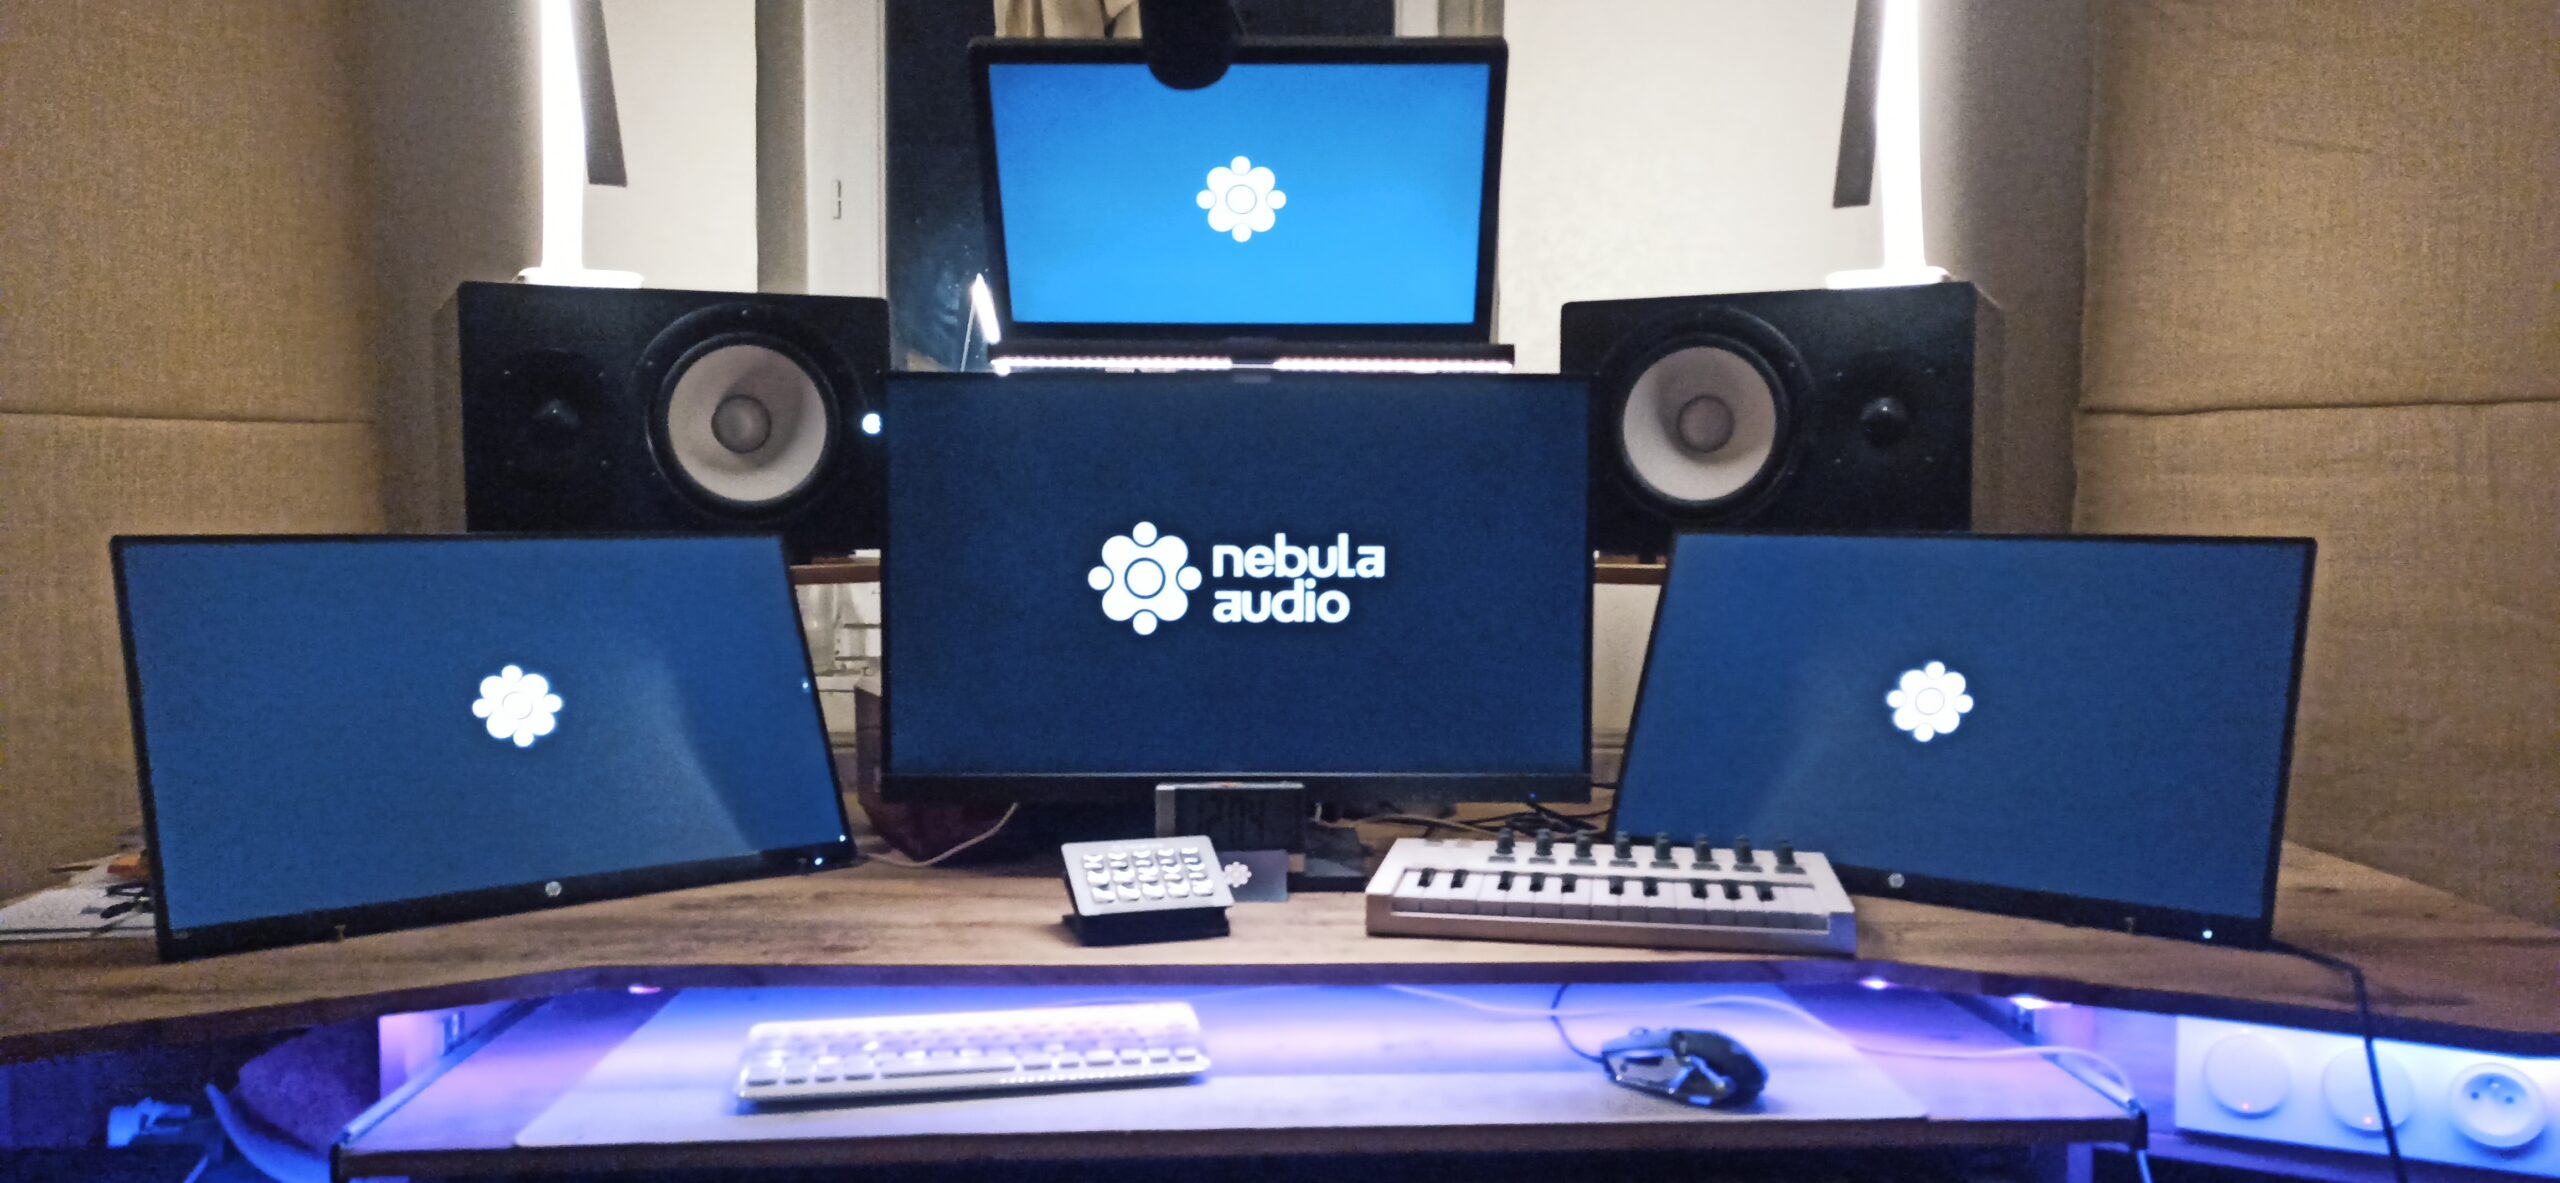 nebula audio